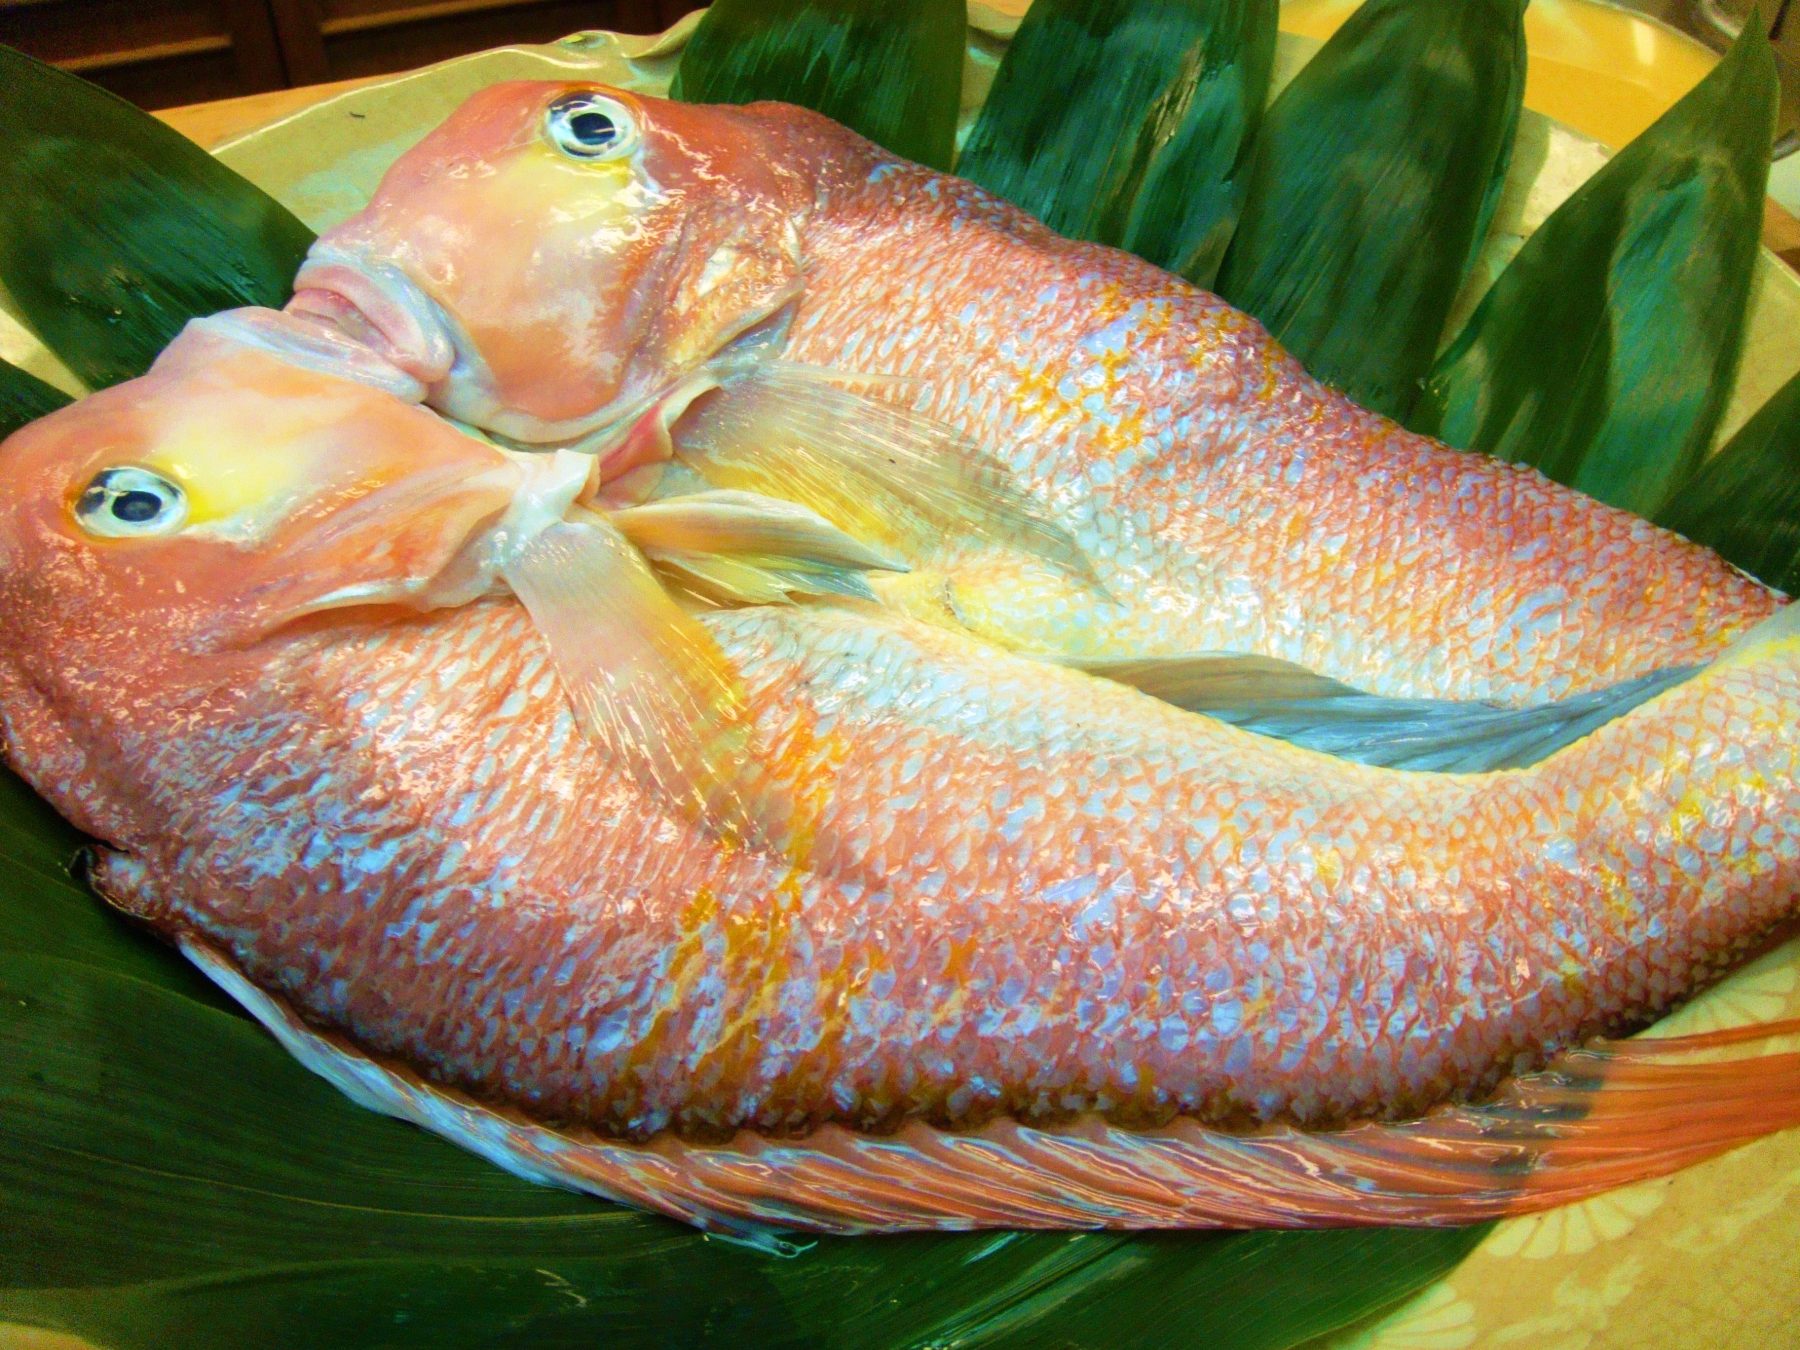  北陸の美味しい魚を自らの育った奈良で紹介したい